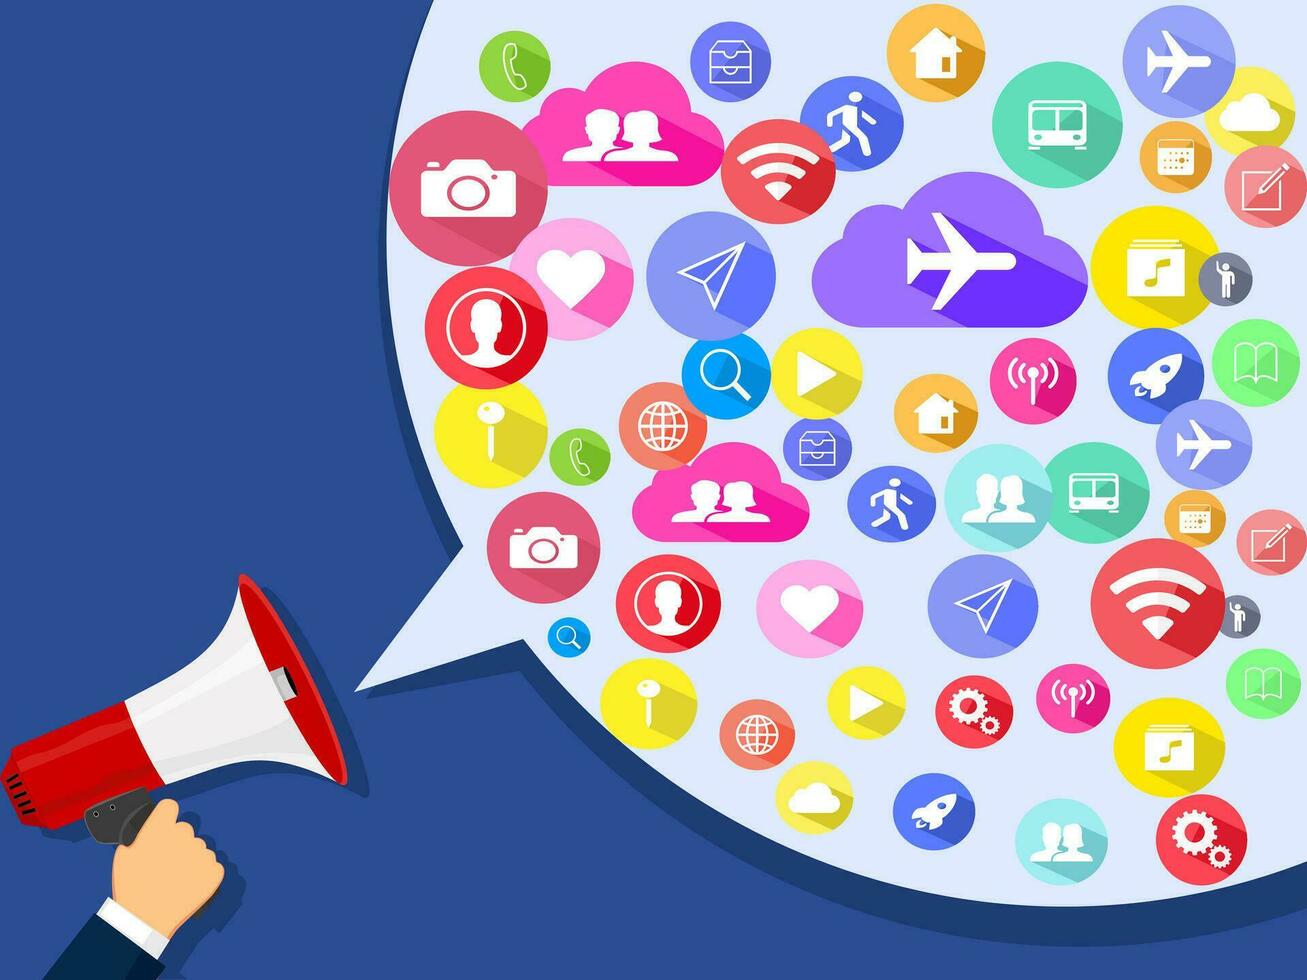 Kommunikation.sozial media.international Sozial Vernetzung und Medien teilen.sozial Medien Marketing Strategien vektor